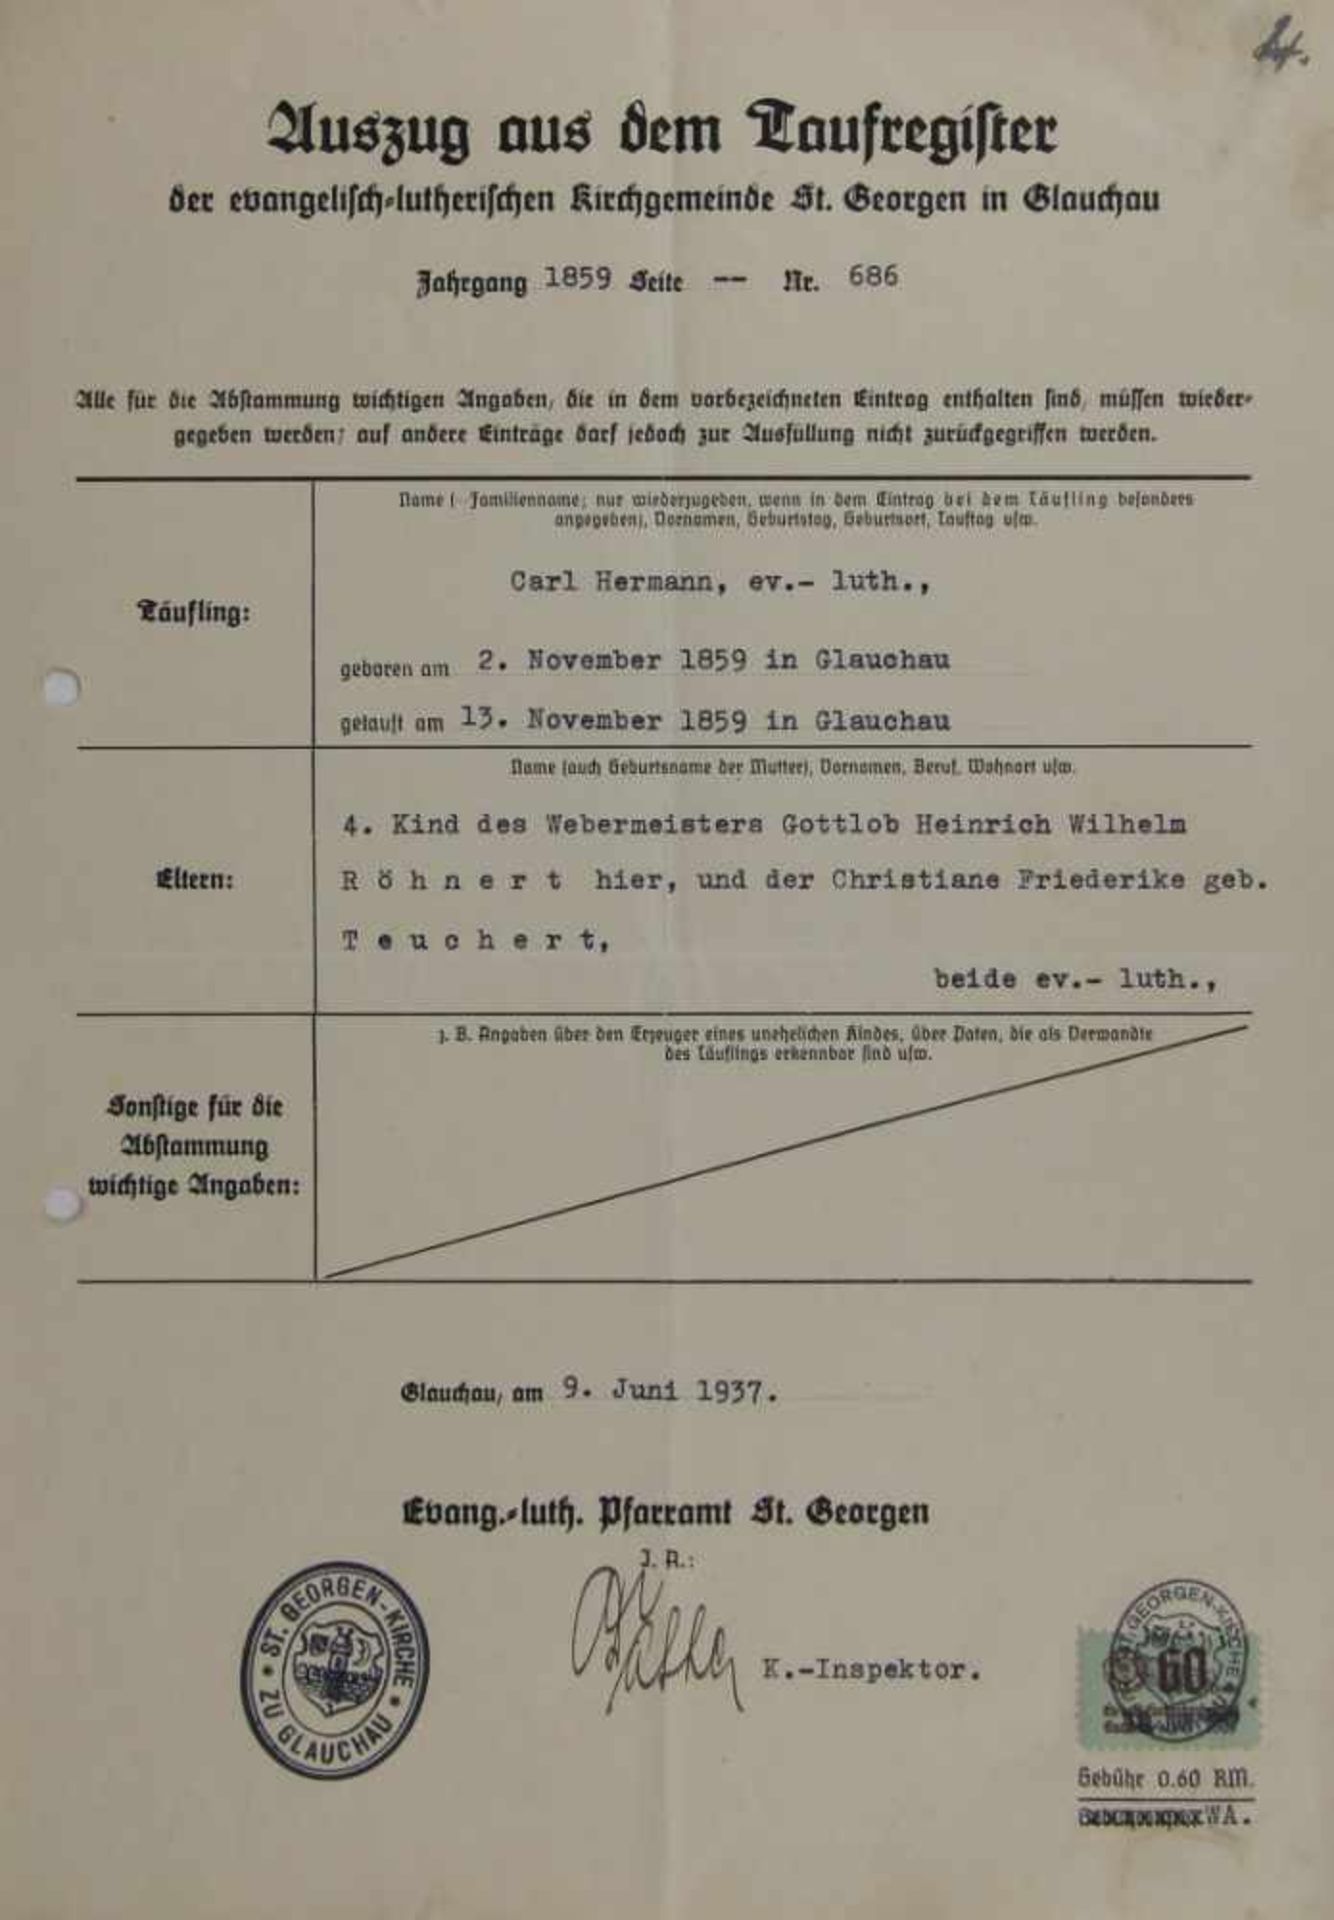 Sachsen. -Sammlung mit ca. 380 Urkunden der Evangelisch-Lutherischen Landeskirche Sachsen, 1937-